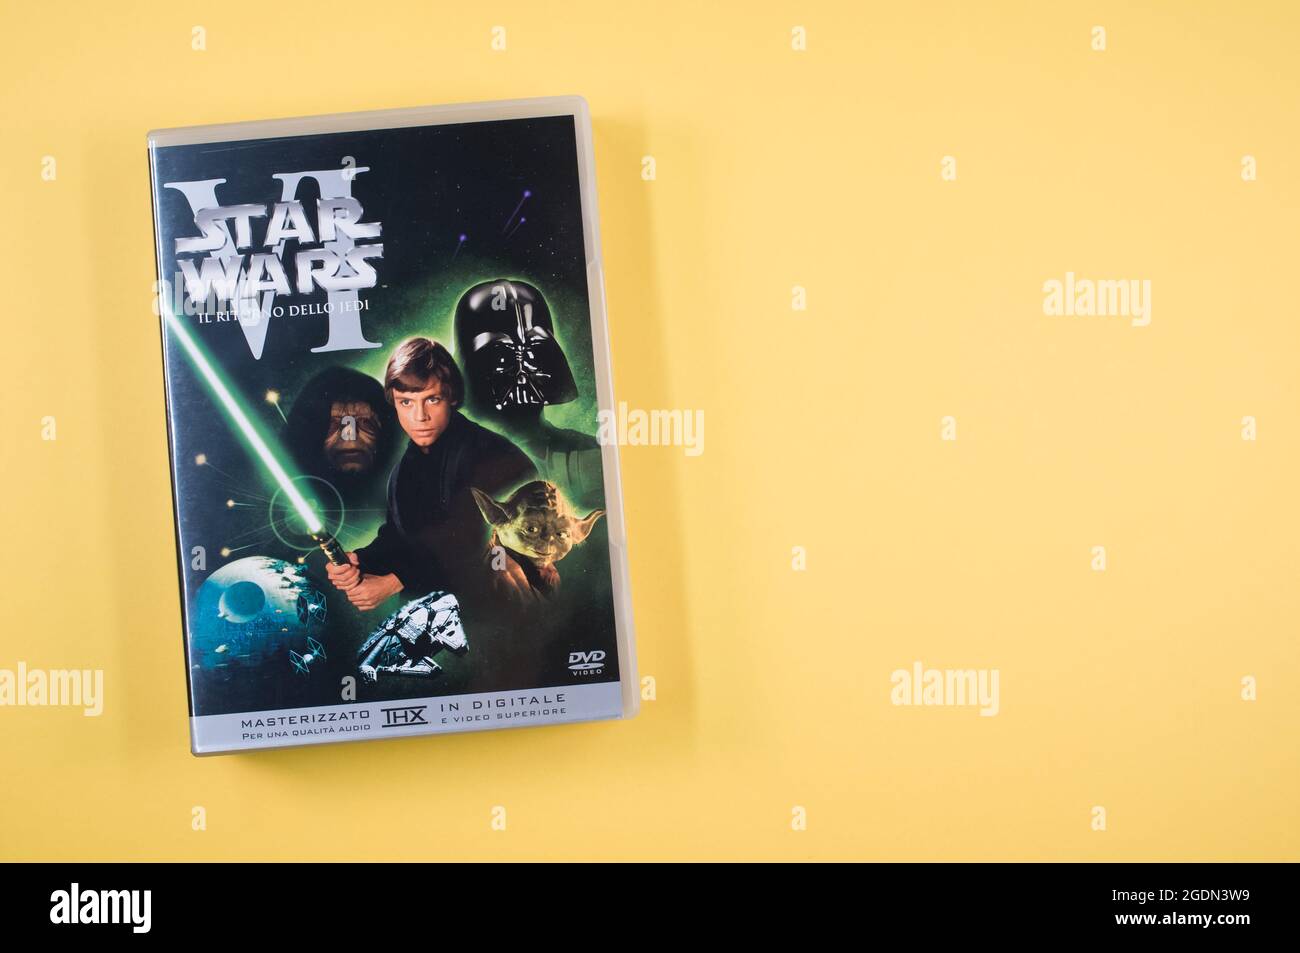 Star Wars original trilogie film DVD avec espace pour le texte Banque D'Images